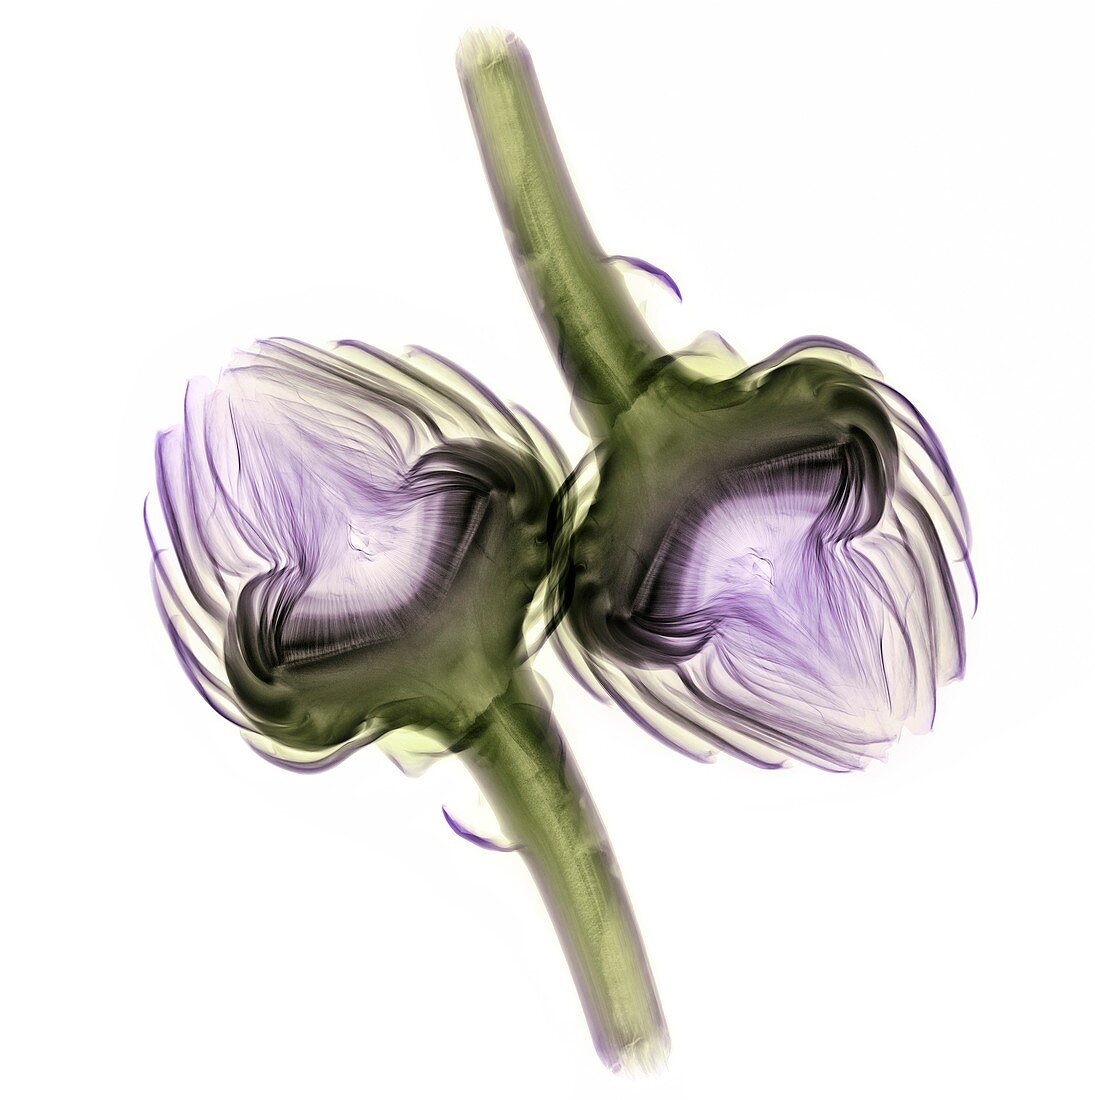 Artichoke (Cynara cardunculus),X-ray